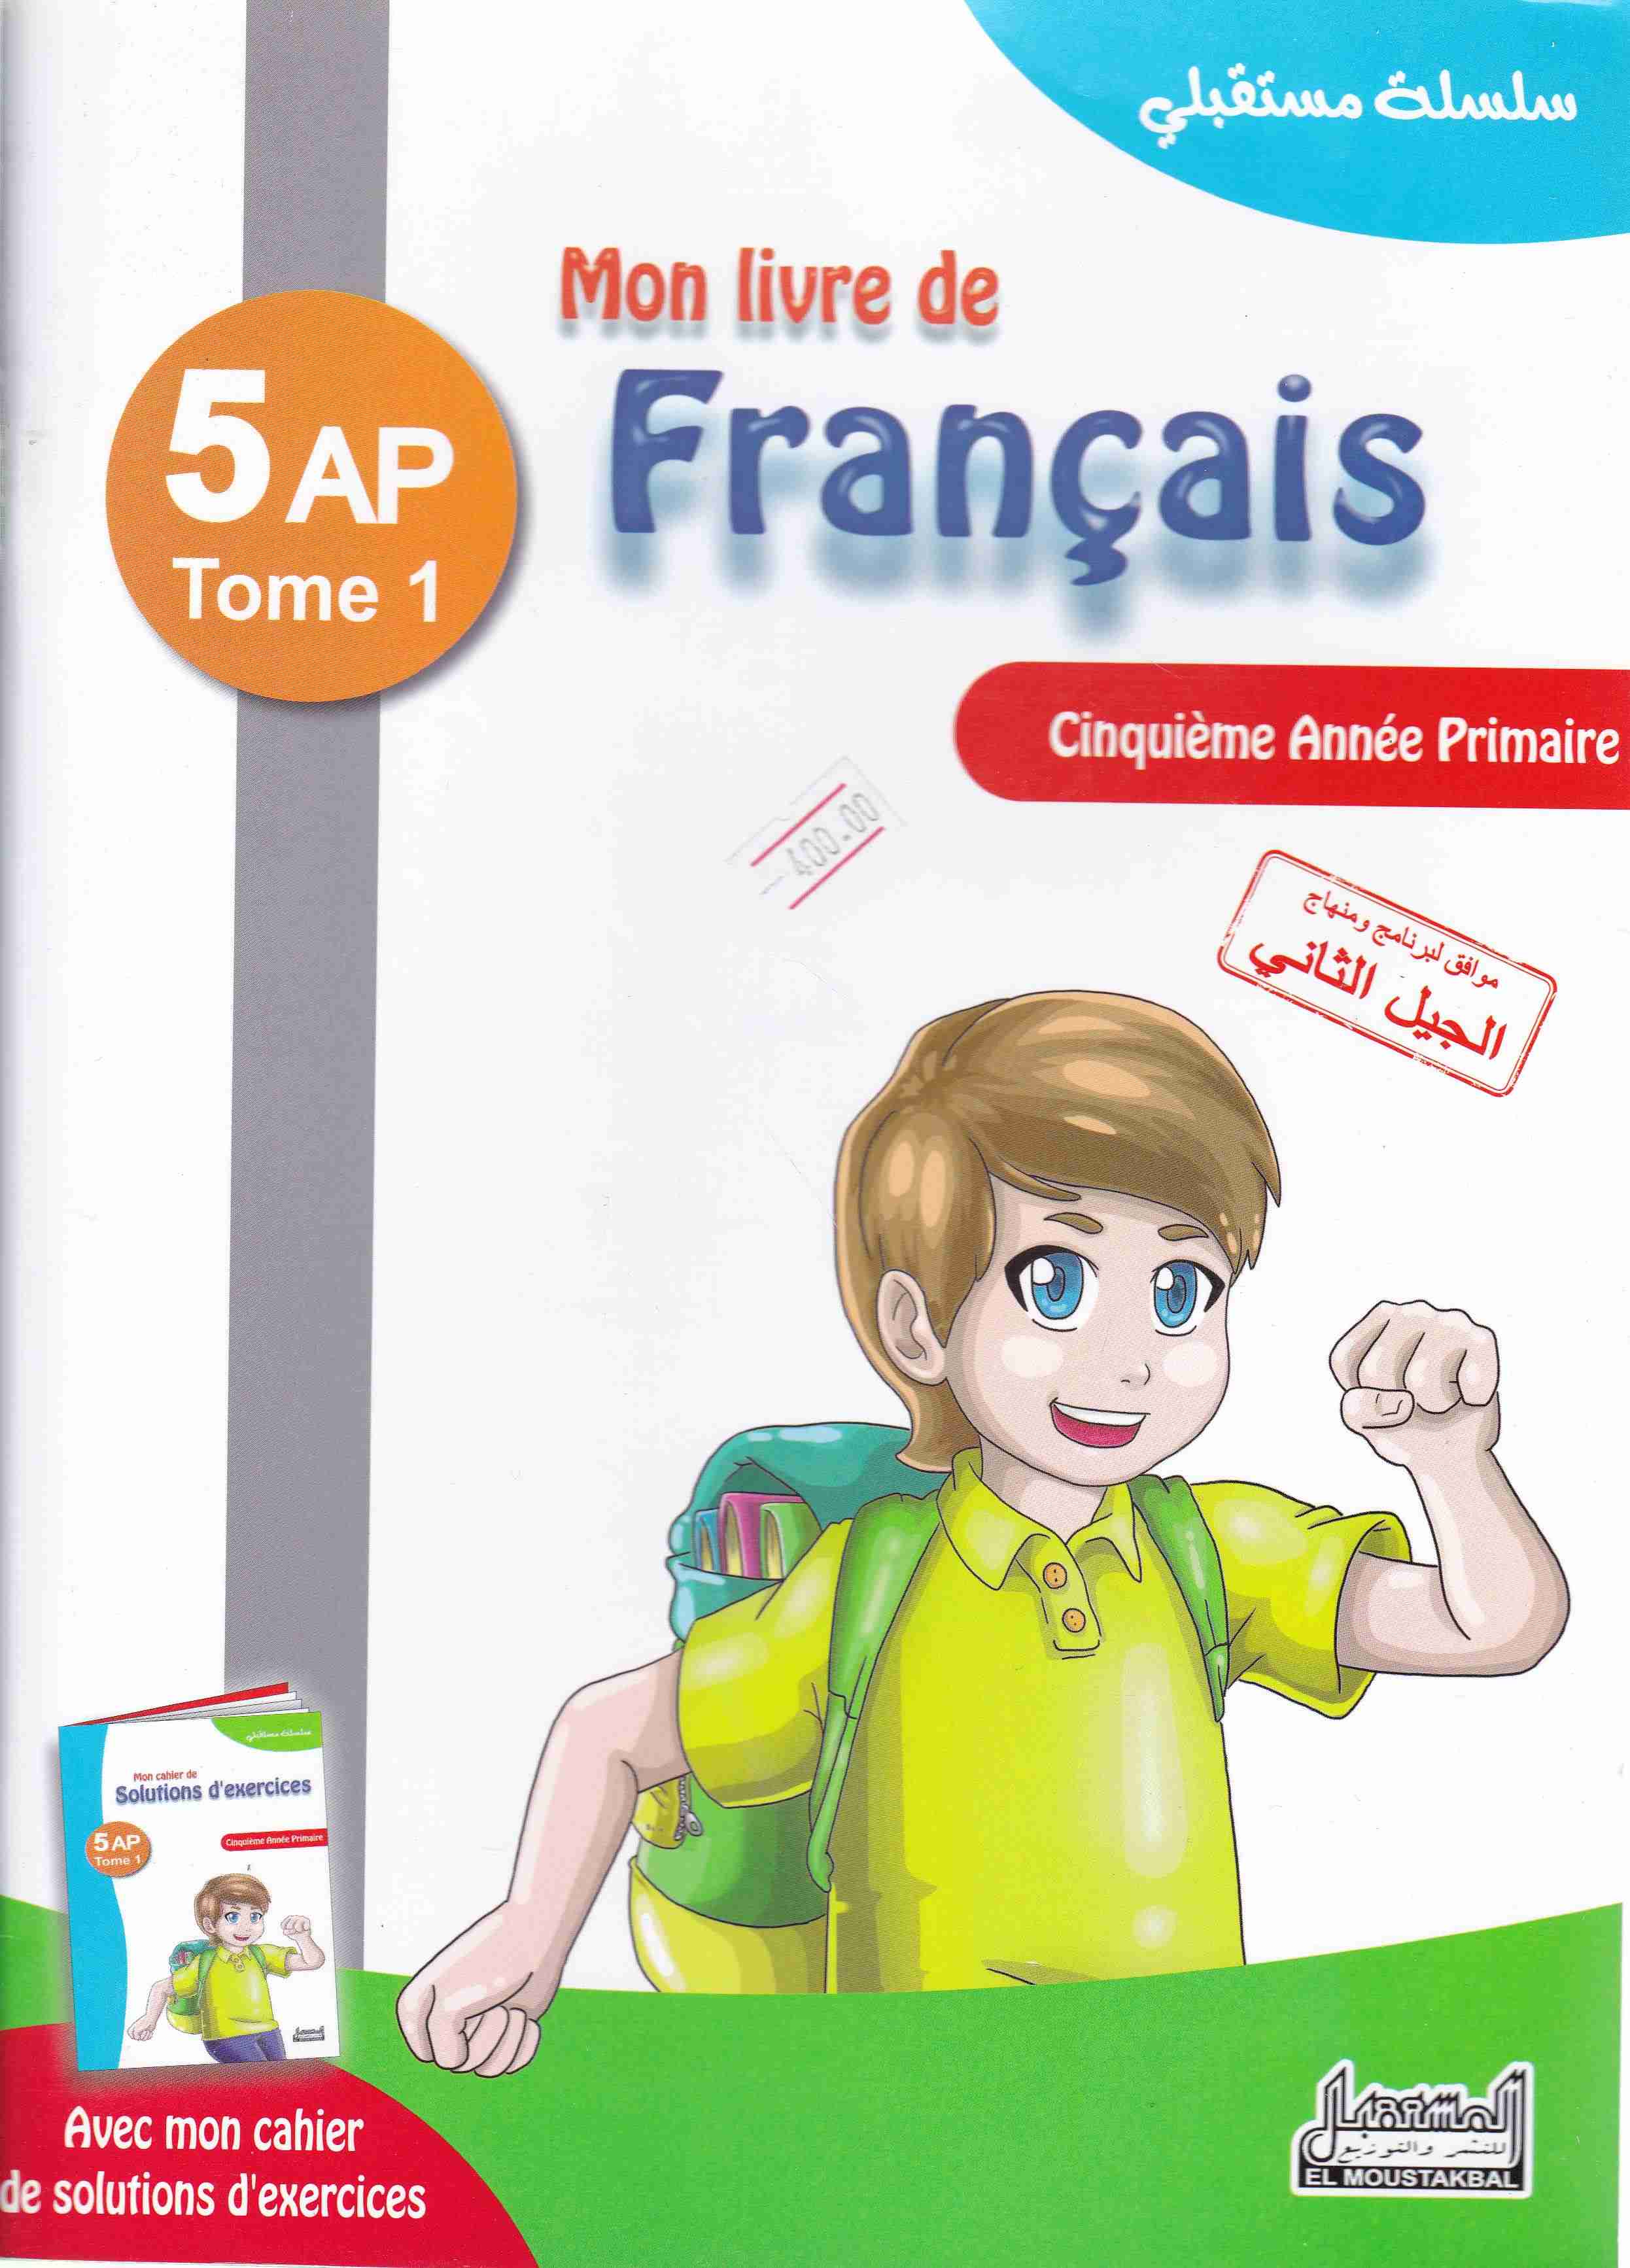 سلسلة مستقبلي mon livre de francais 5ap tome1